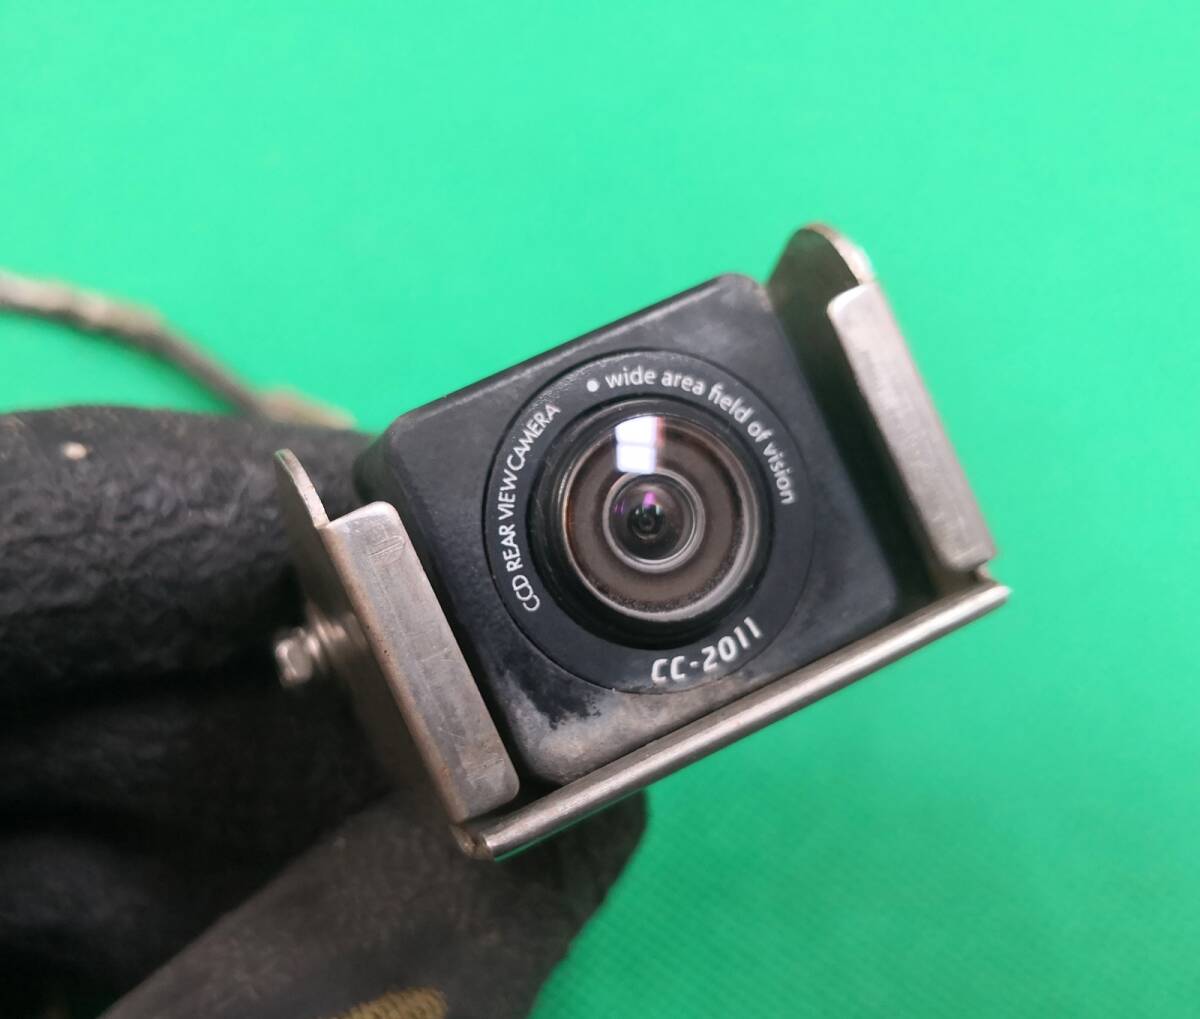  Clarion clarion маленький размер цвет камера заднего обзора CC-2011 рабочее состояние подтверждено ( автобус * для грузовика )